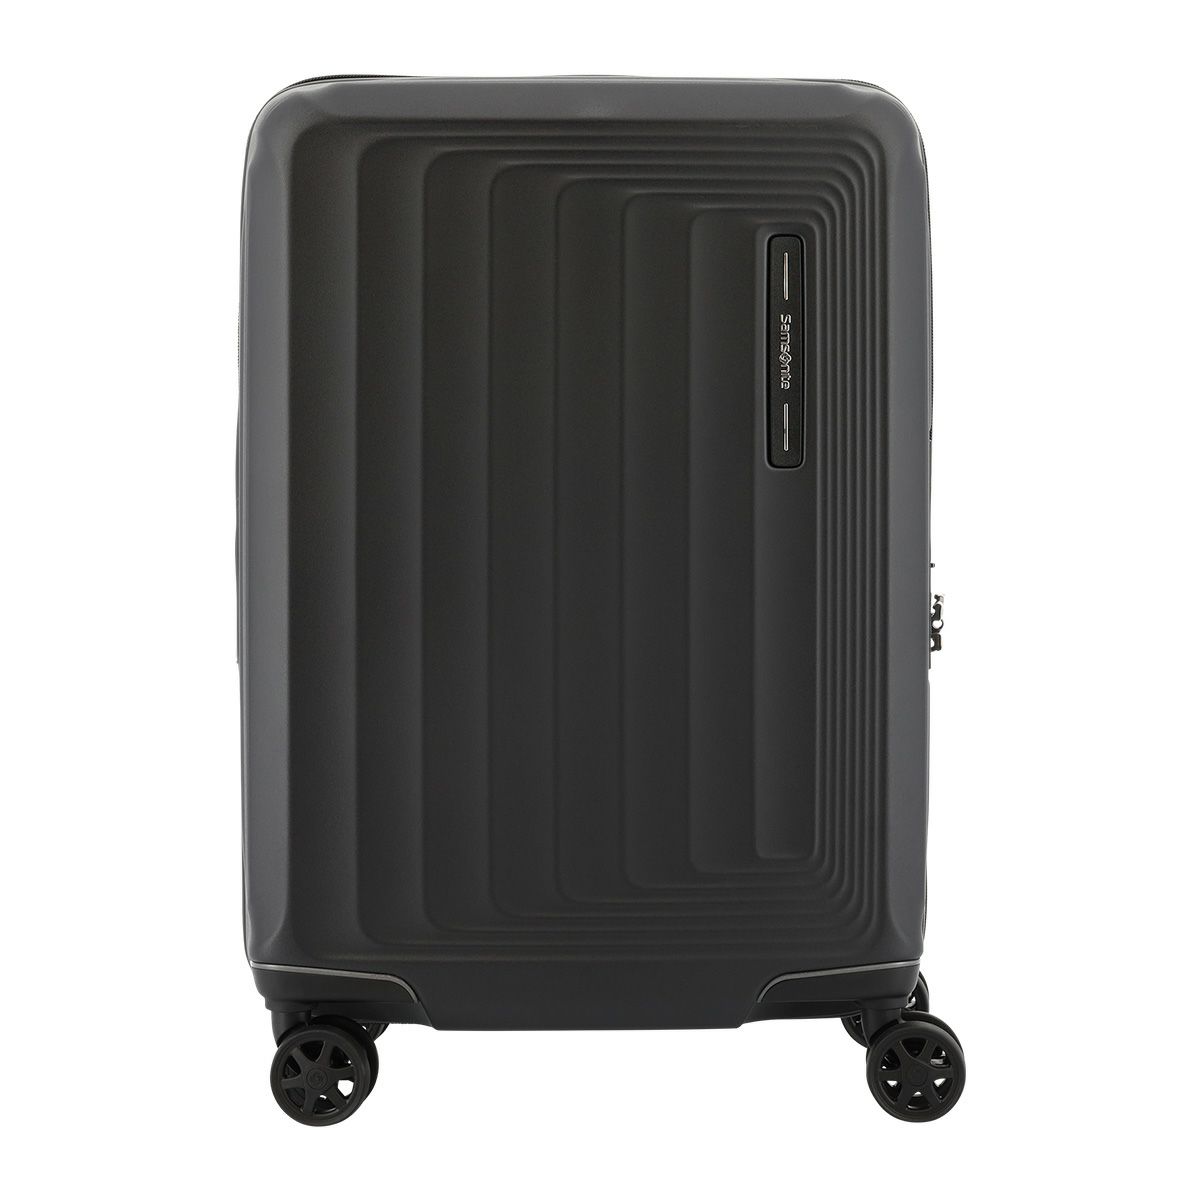 サムソナイト スーツケース ヌオン スピナー 100(110)L 70cm 3.6kgNUON 